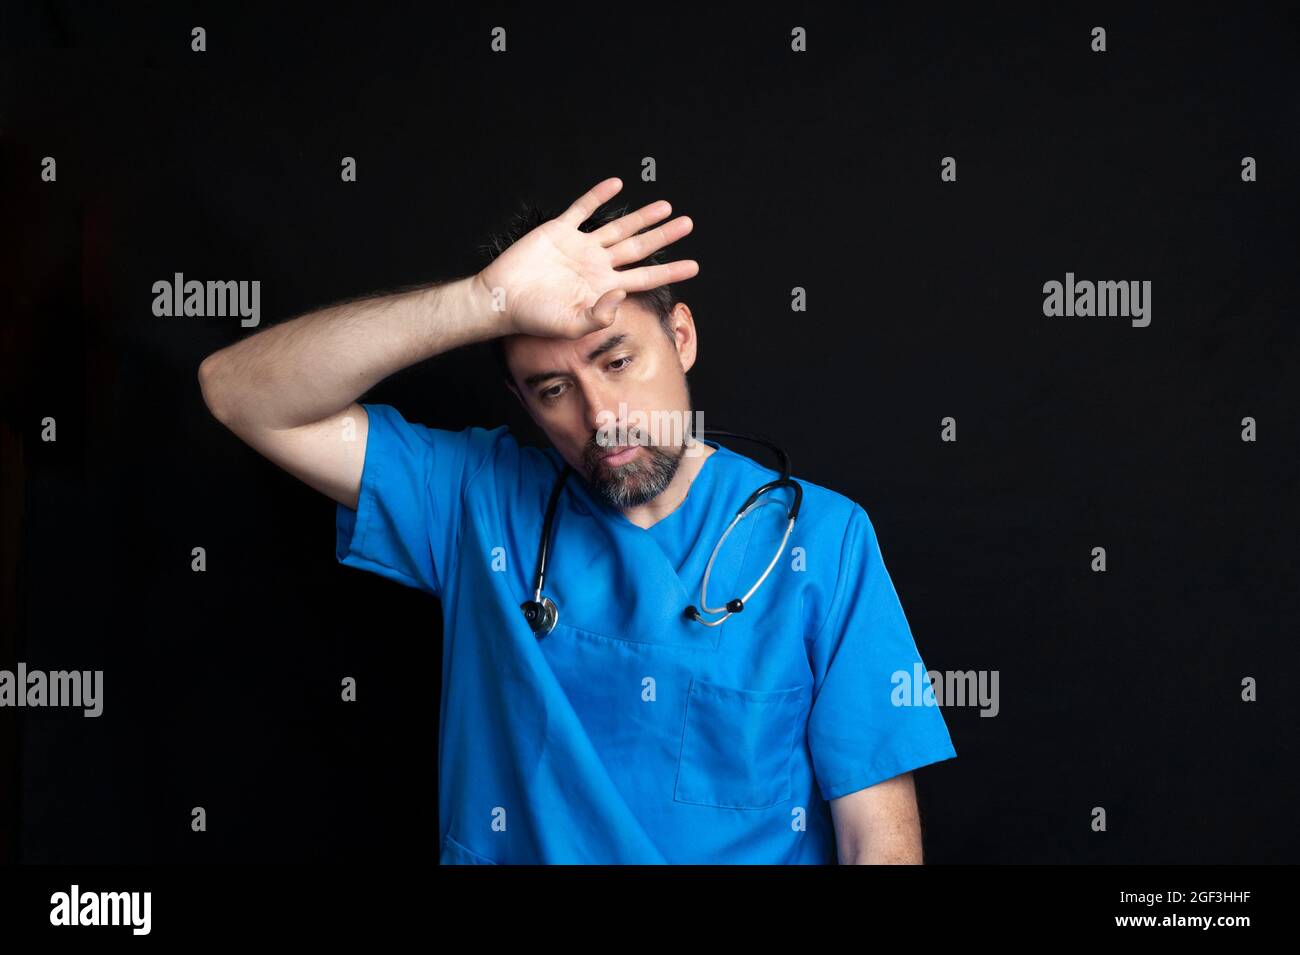 Médecin vêtu d'un uniforme bleu d'hôpital, sombre et barbu, portant un stéthoscope autour de son cou, essuyant son front avec sa main avec un ou fatigué Banque D'Images